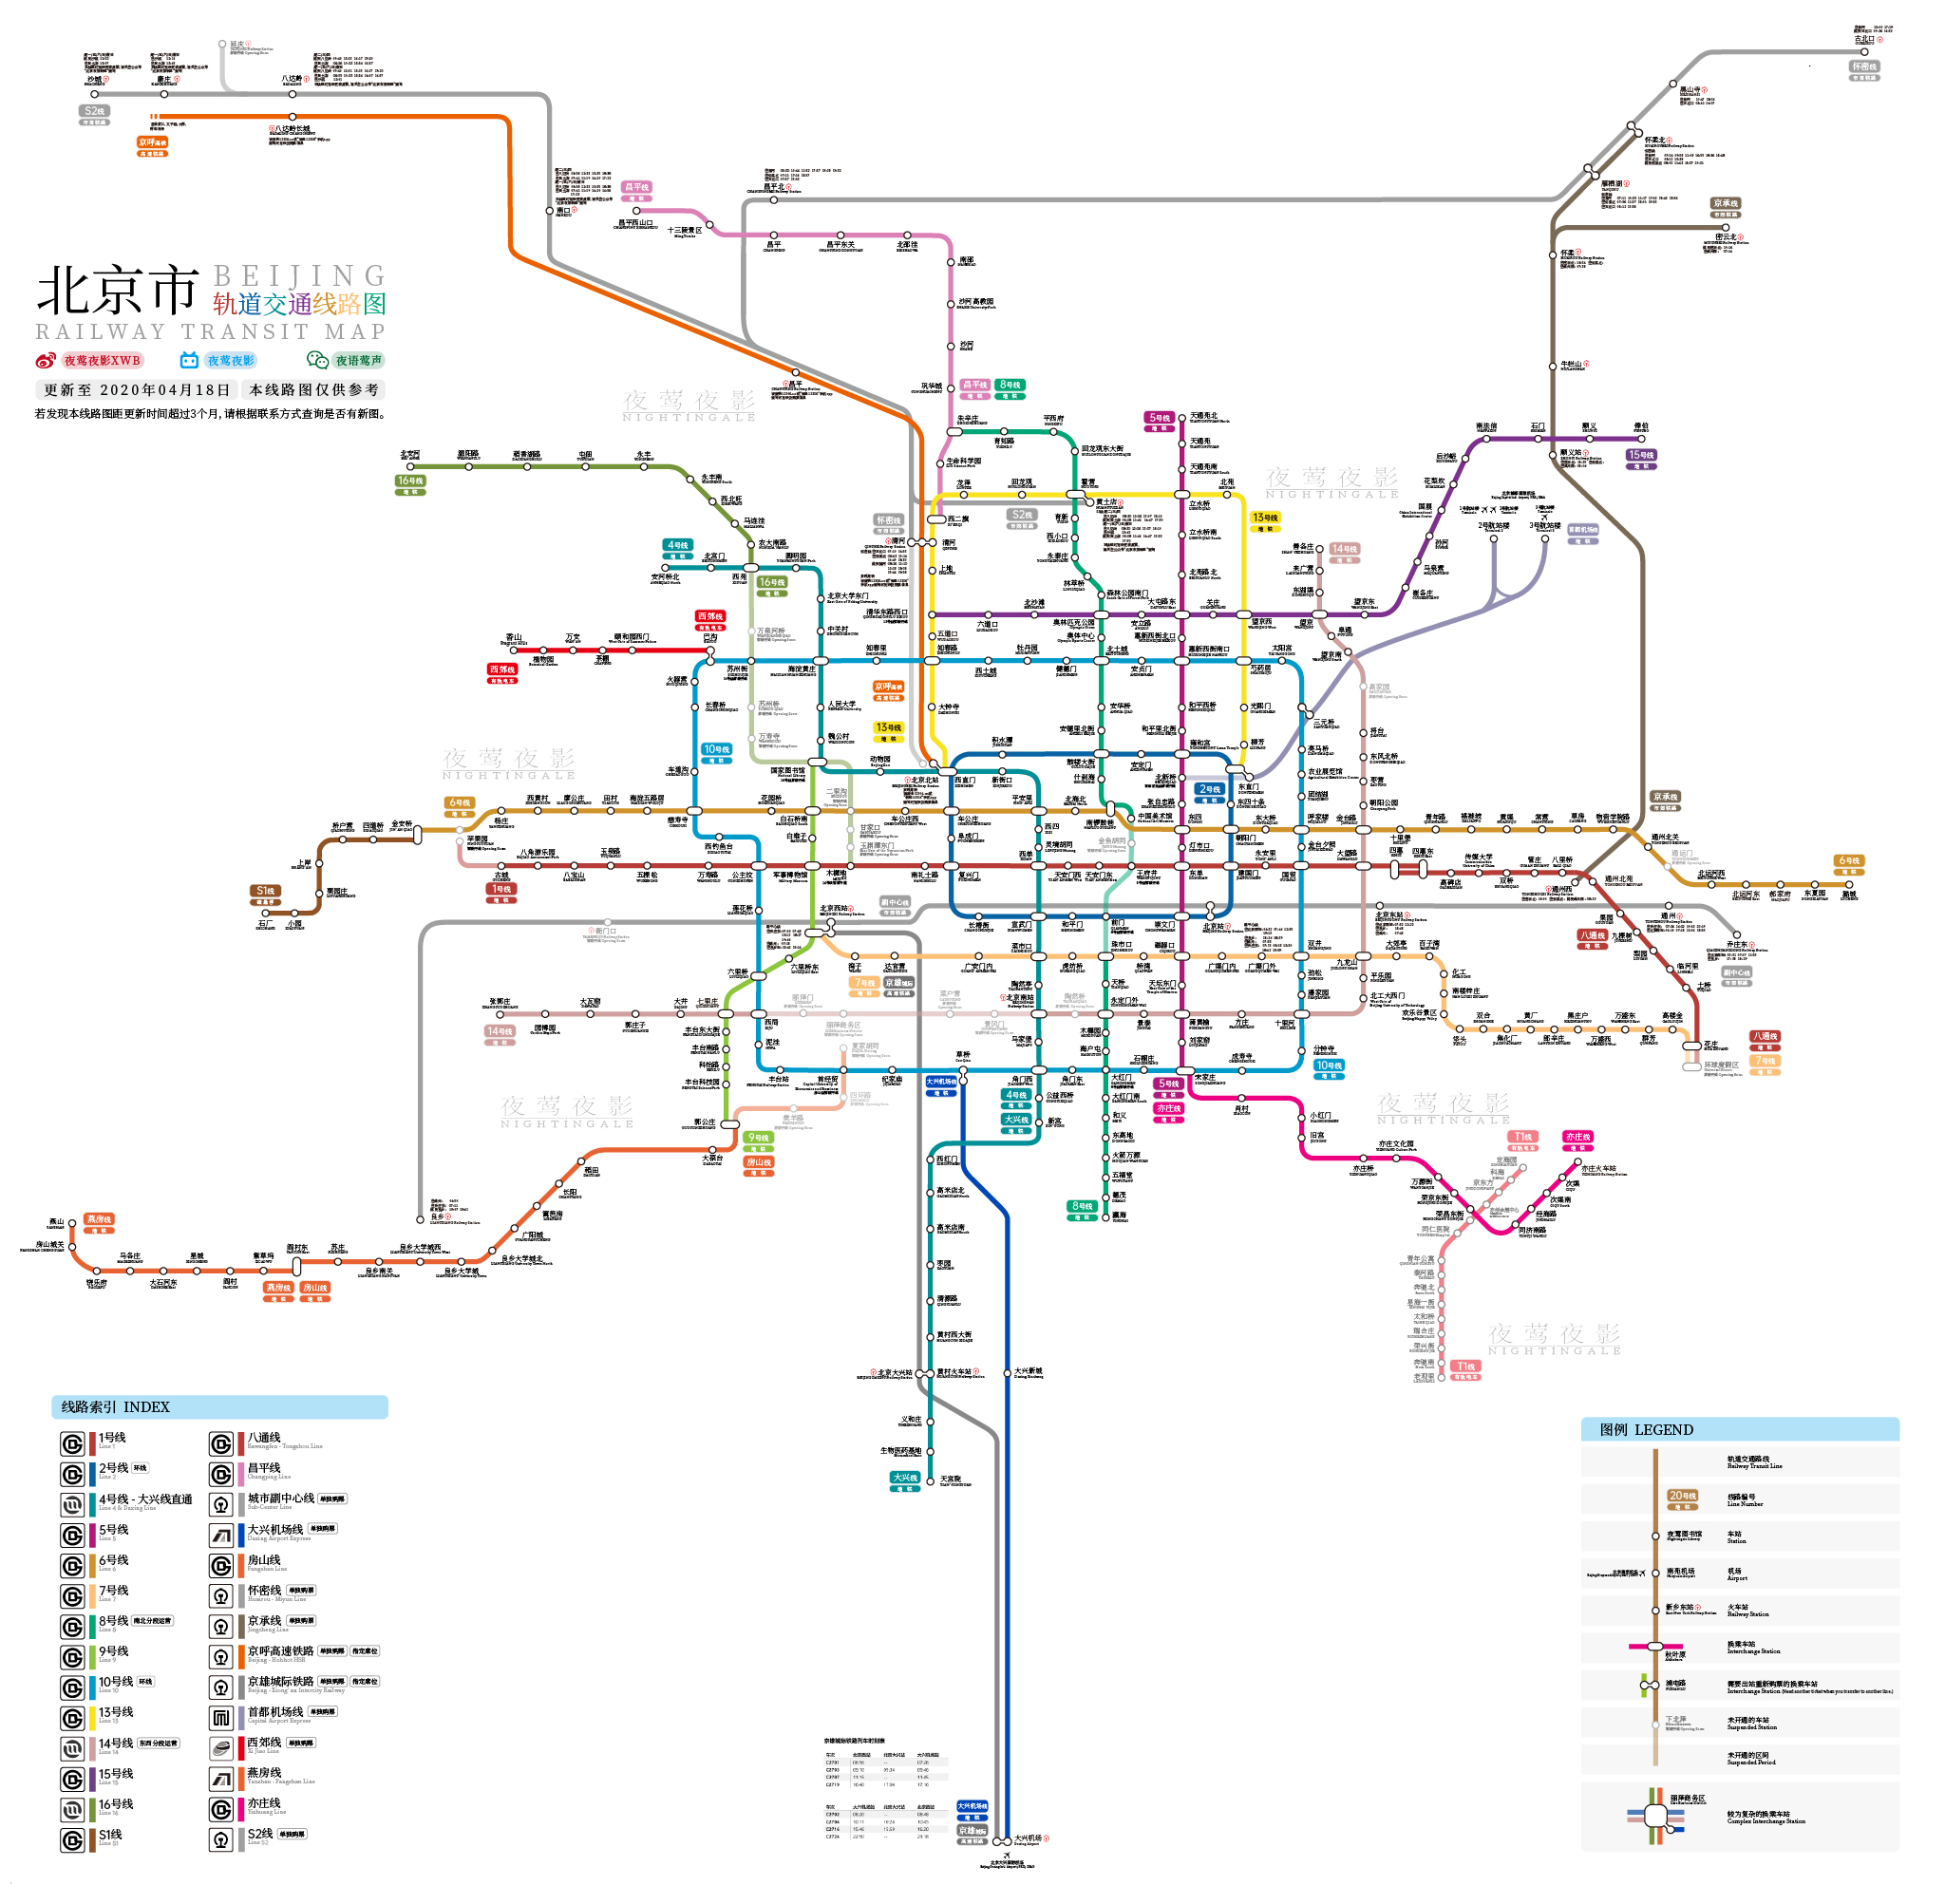 夜莺出品北京市轨道交通线路图更新至2020年06月30日